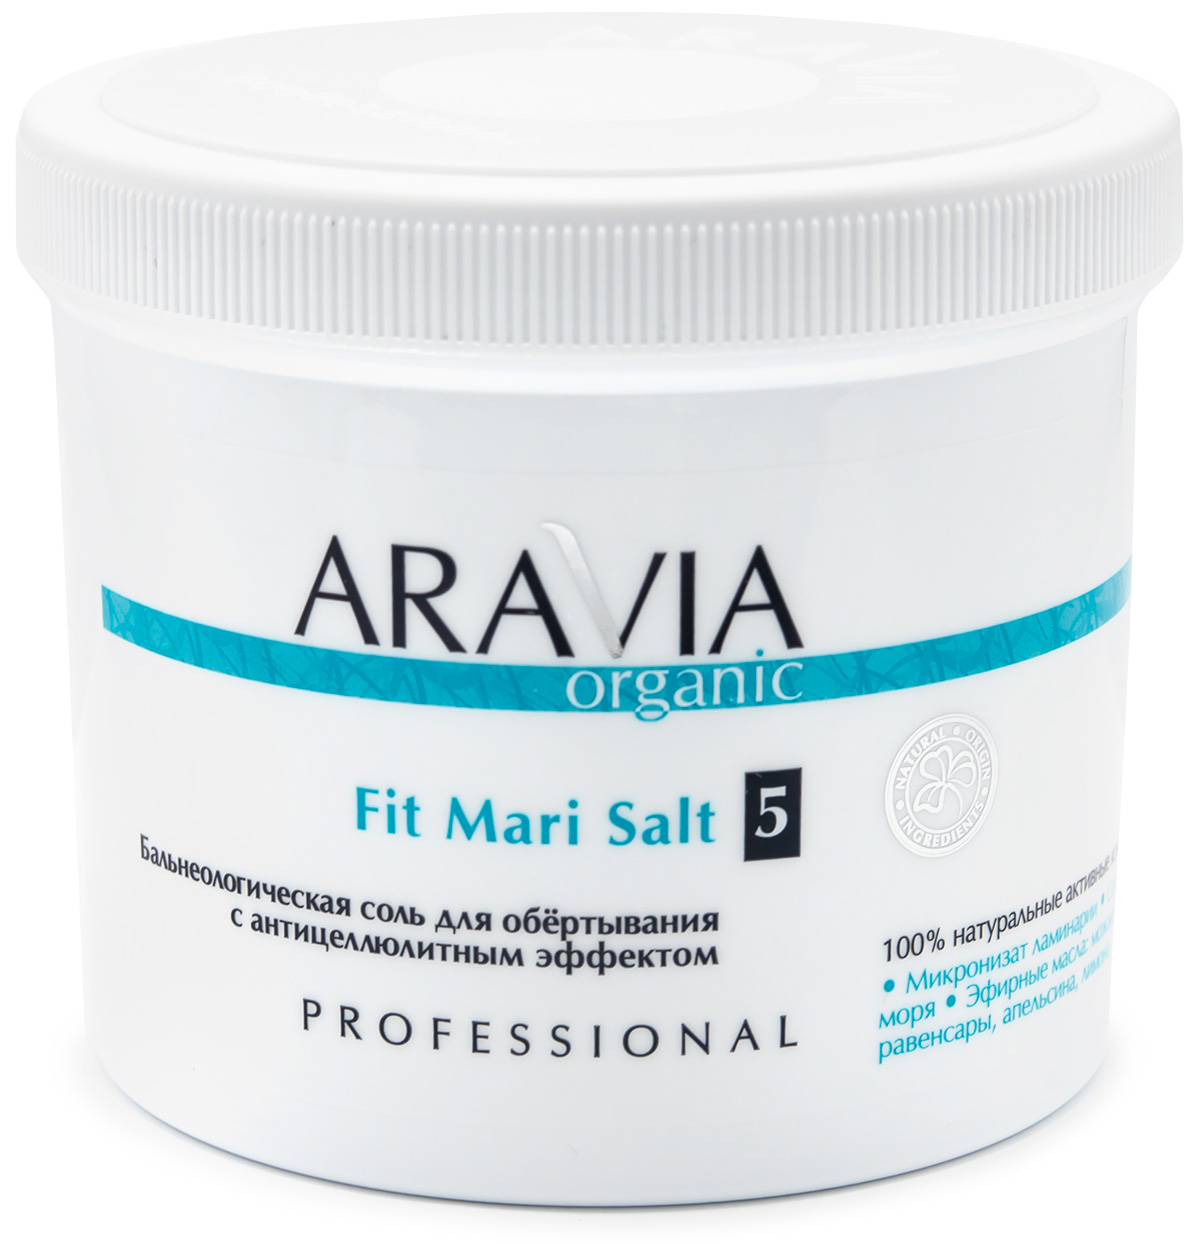 Купить Aravia Professional Бальнеологическая соль для обёртывания с антицеллюлитным эффектом Fit Mari Salt, 730 г (Aravia Professional, Уход за телом), Россия